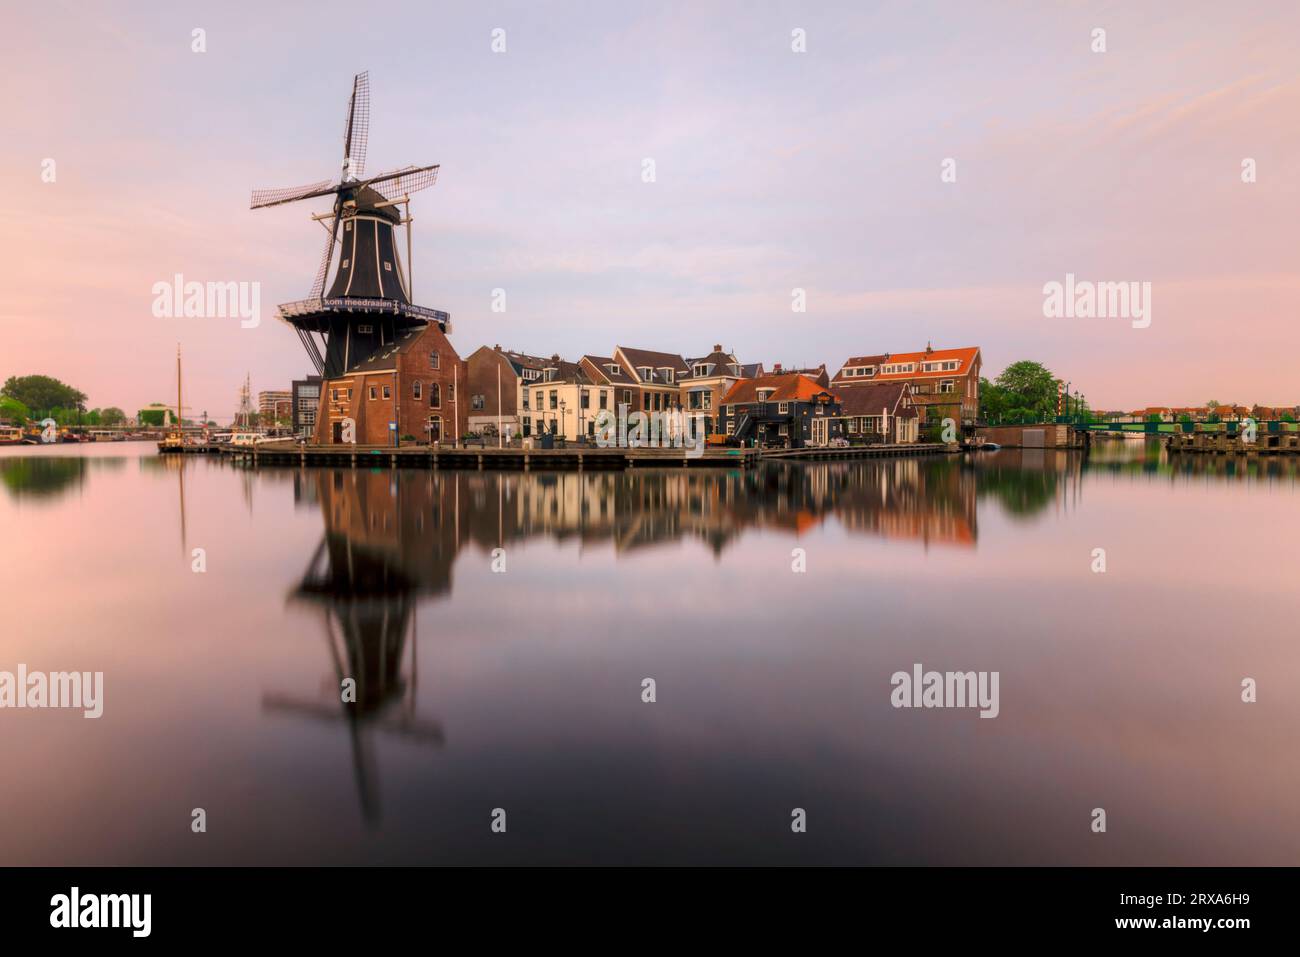 De Adriaan Windmill in Haarlem, Netherlands Stock Photo